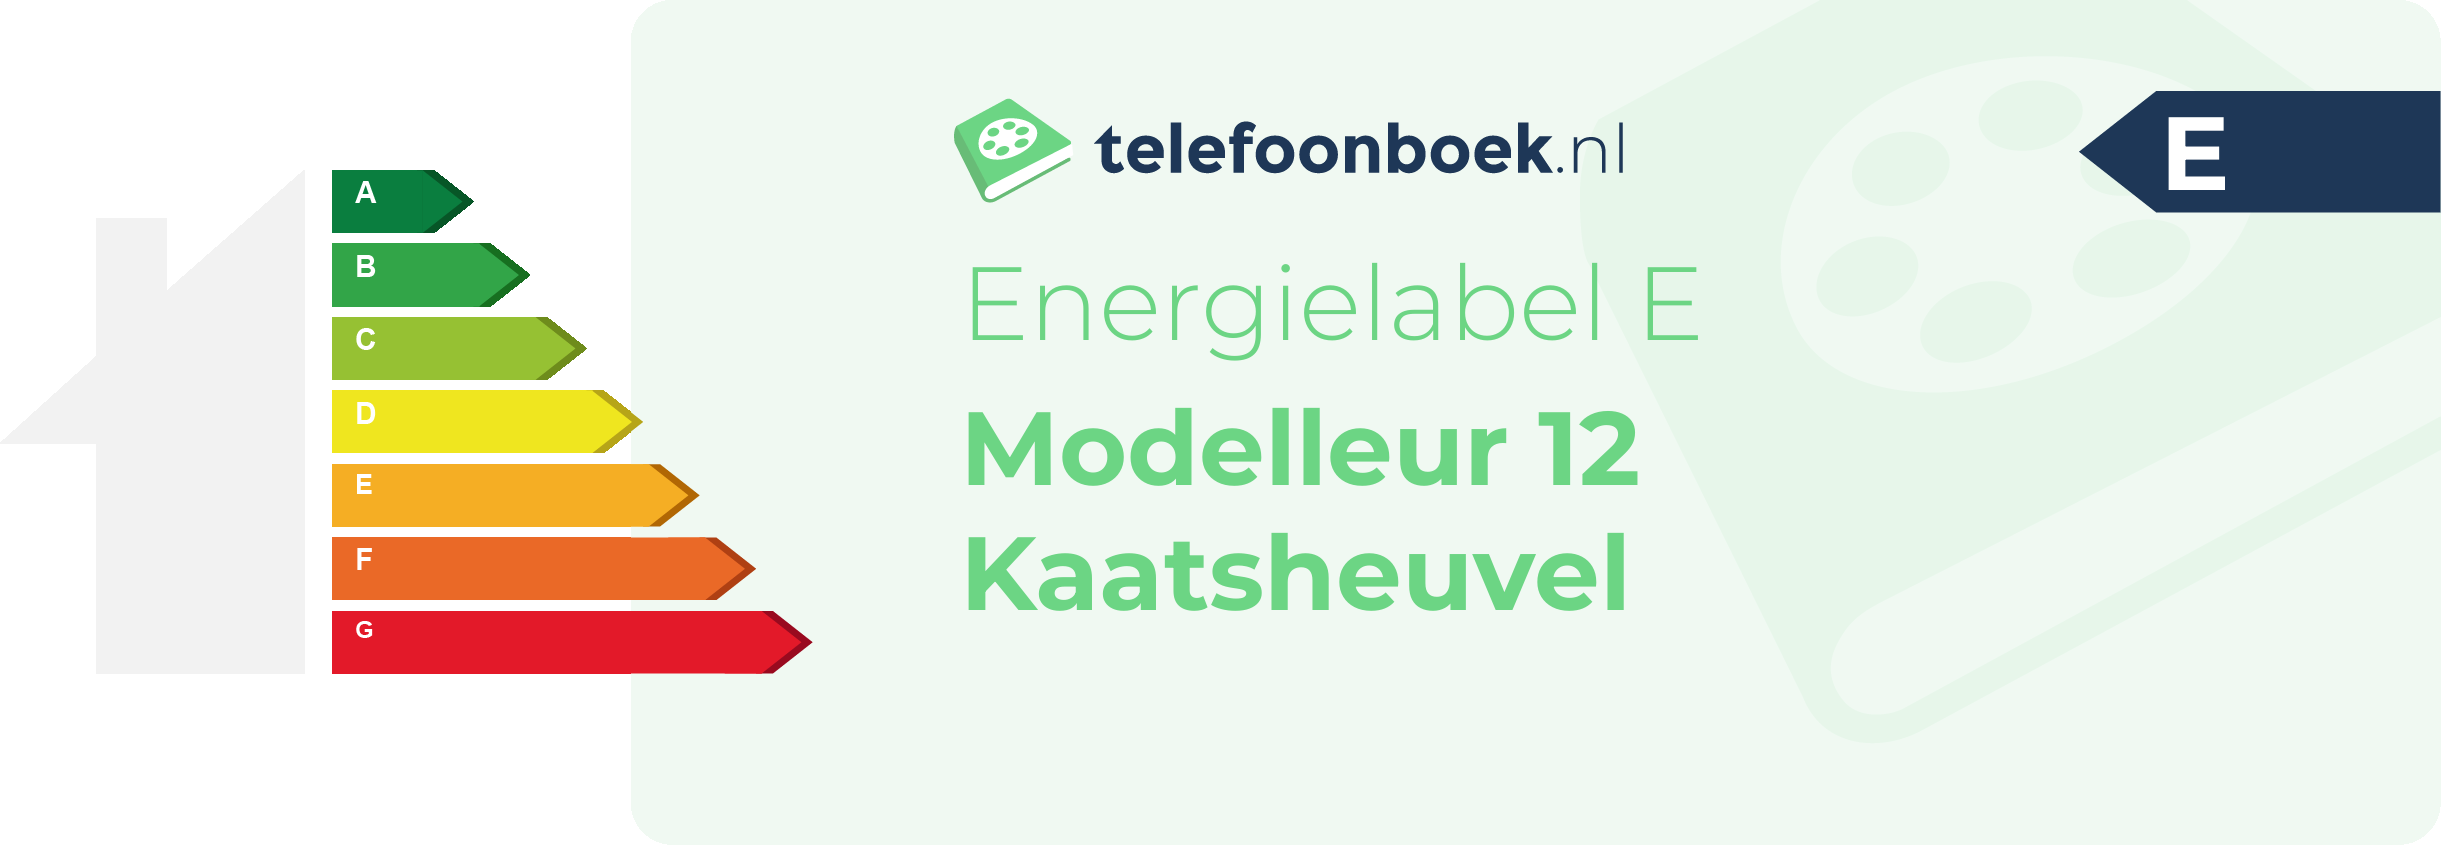 Energielabel Modelleur 12 Kaatsheuvel